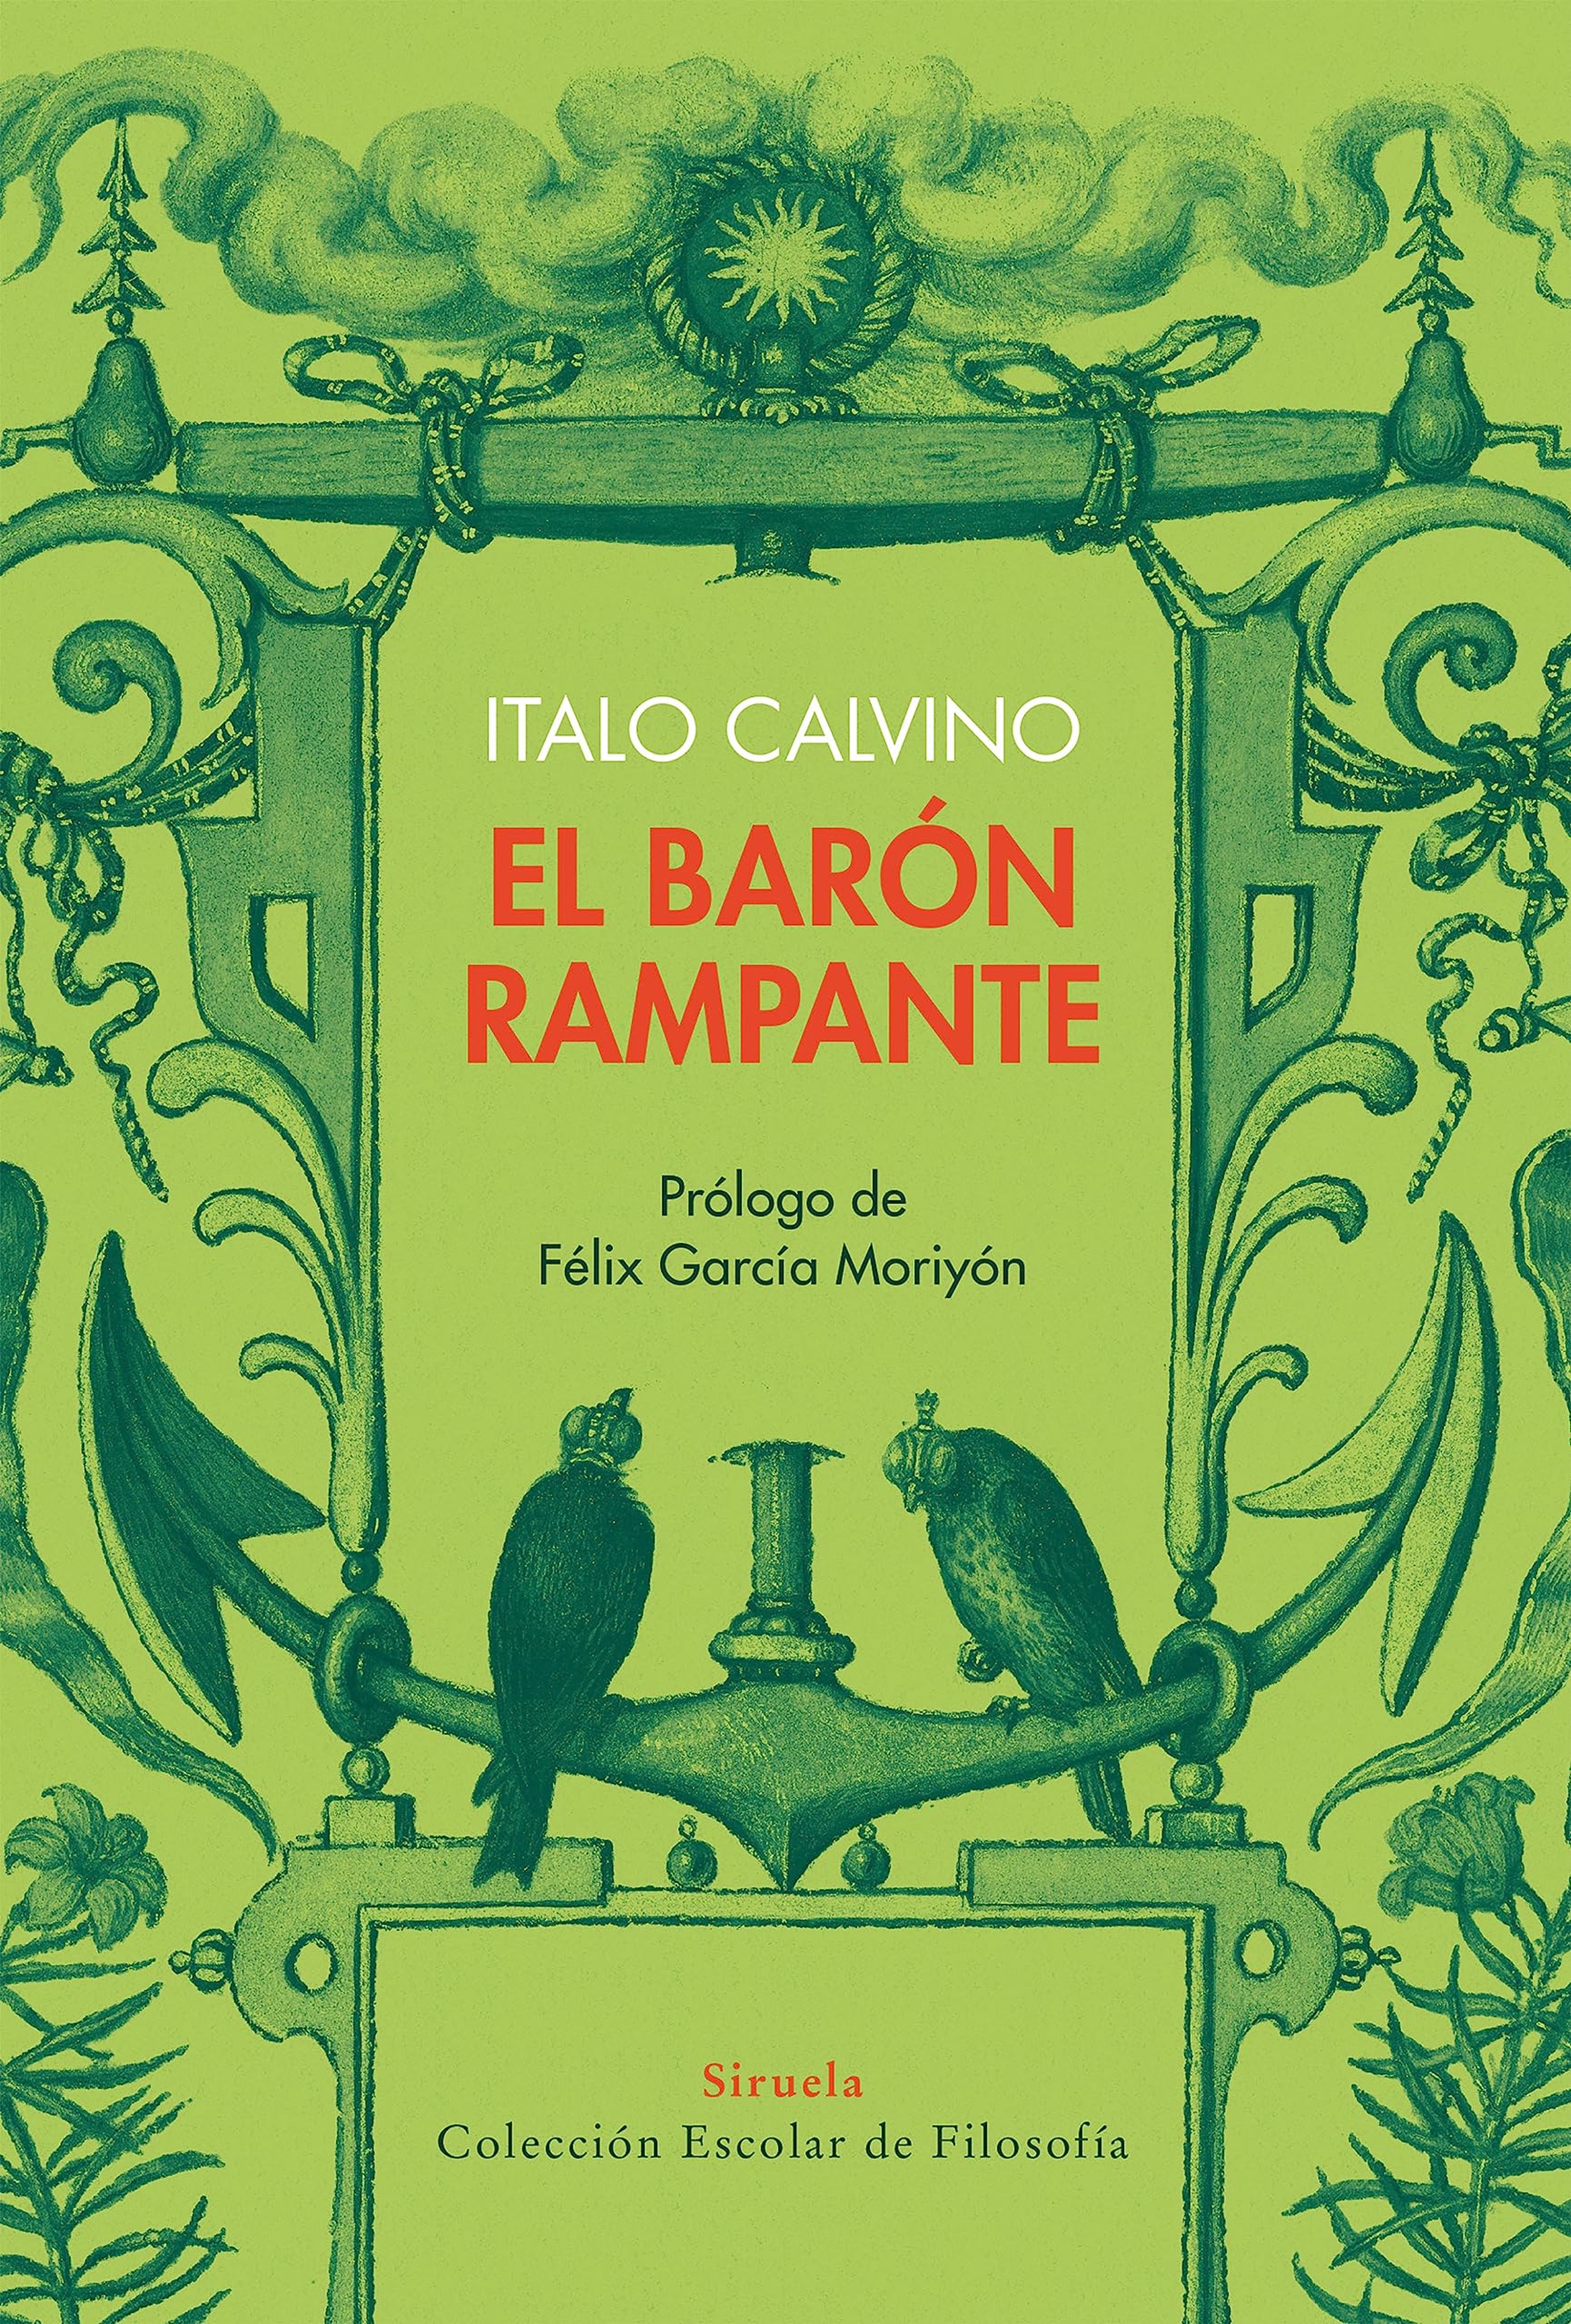 El barón rampante, de Italo Calvino.